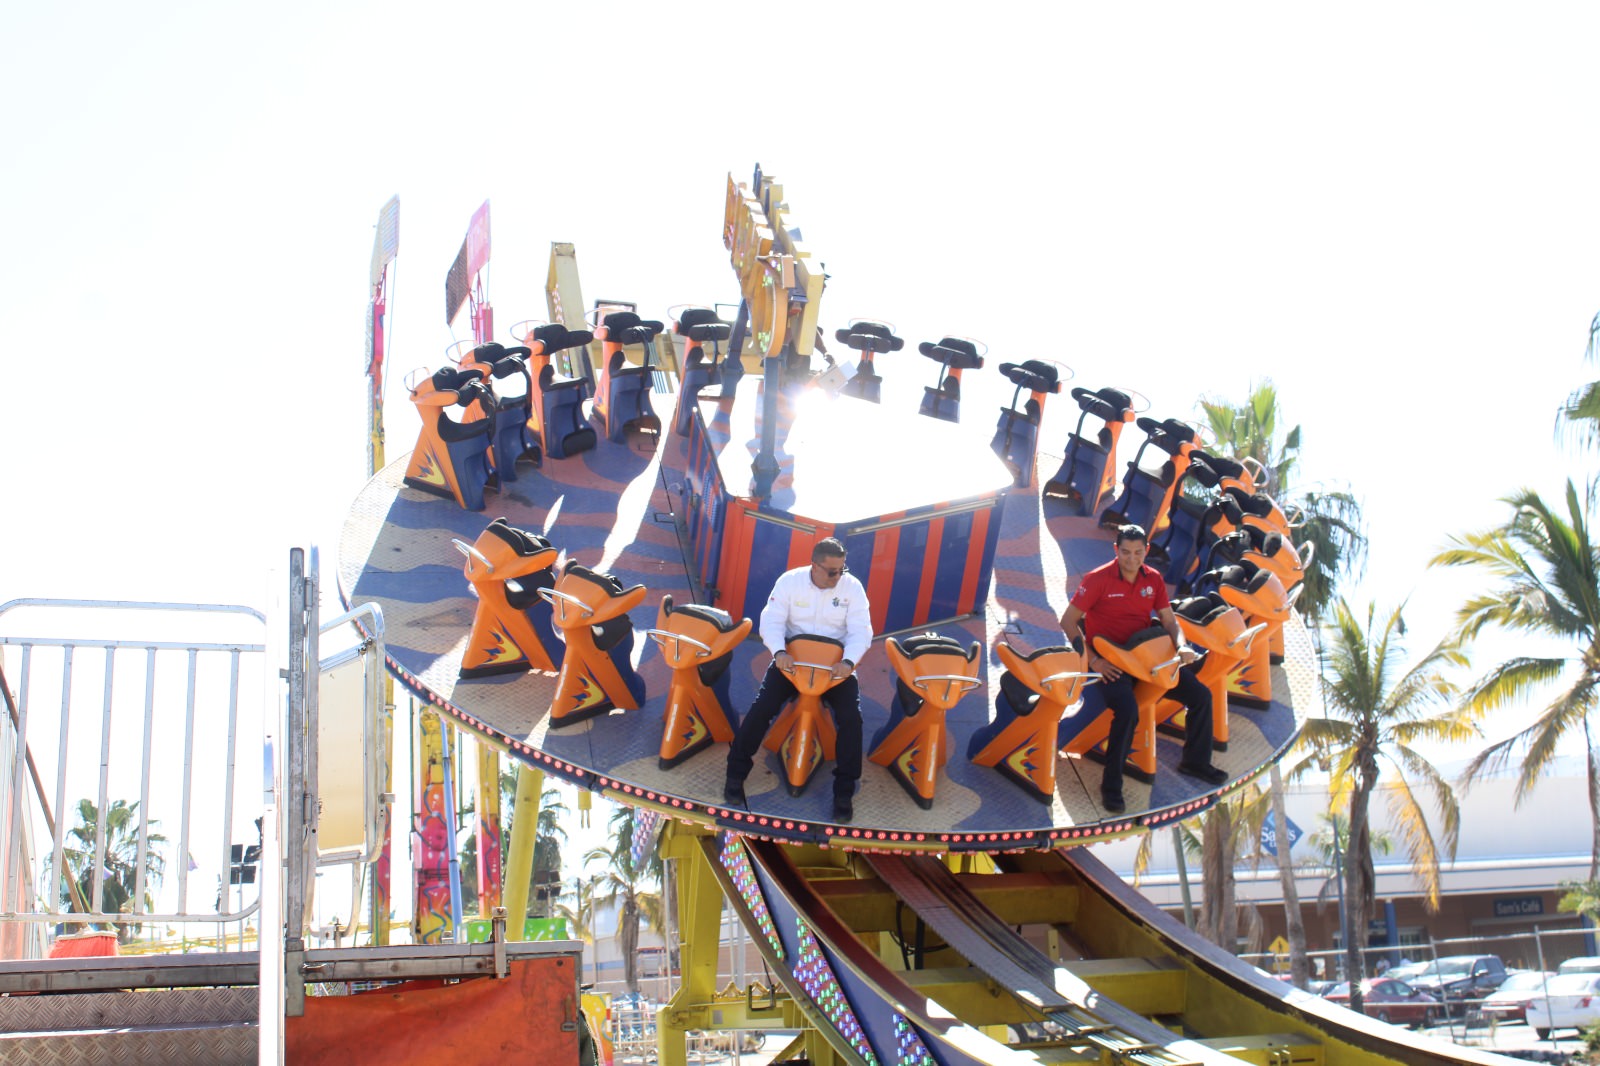 Carnival fair in Mazatlán, Sinaloa, Mexico